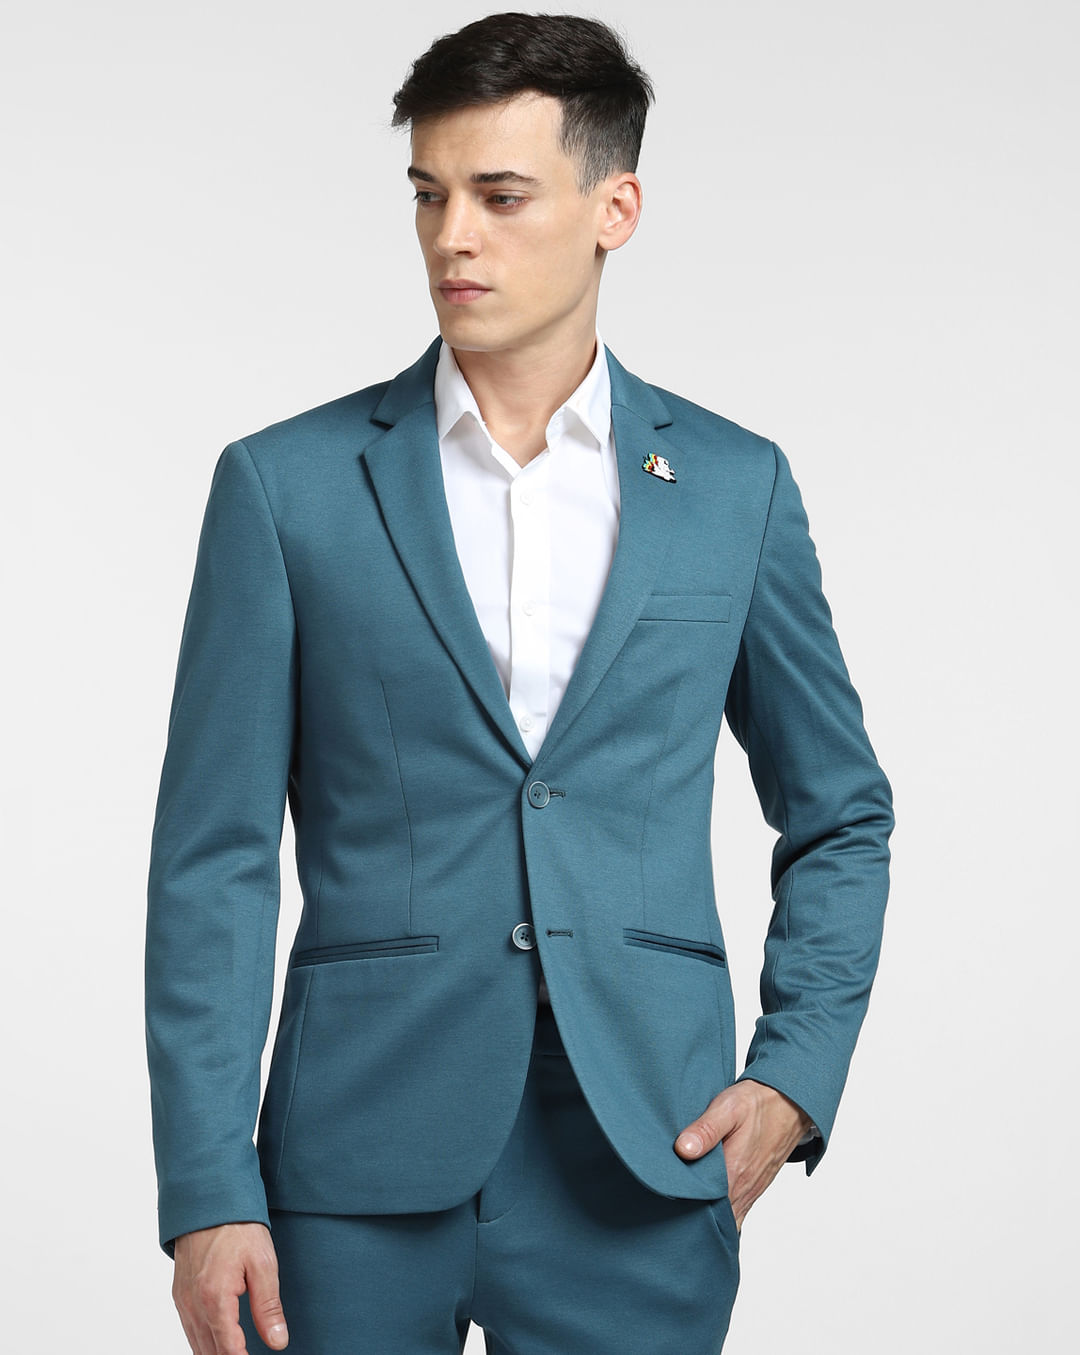 Buy Teal Suit-Set Blazer for Men